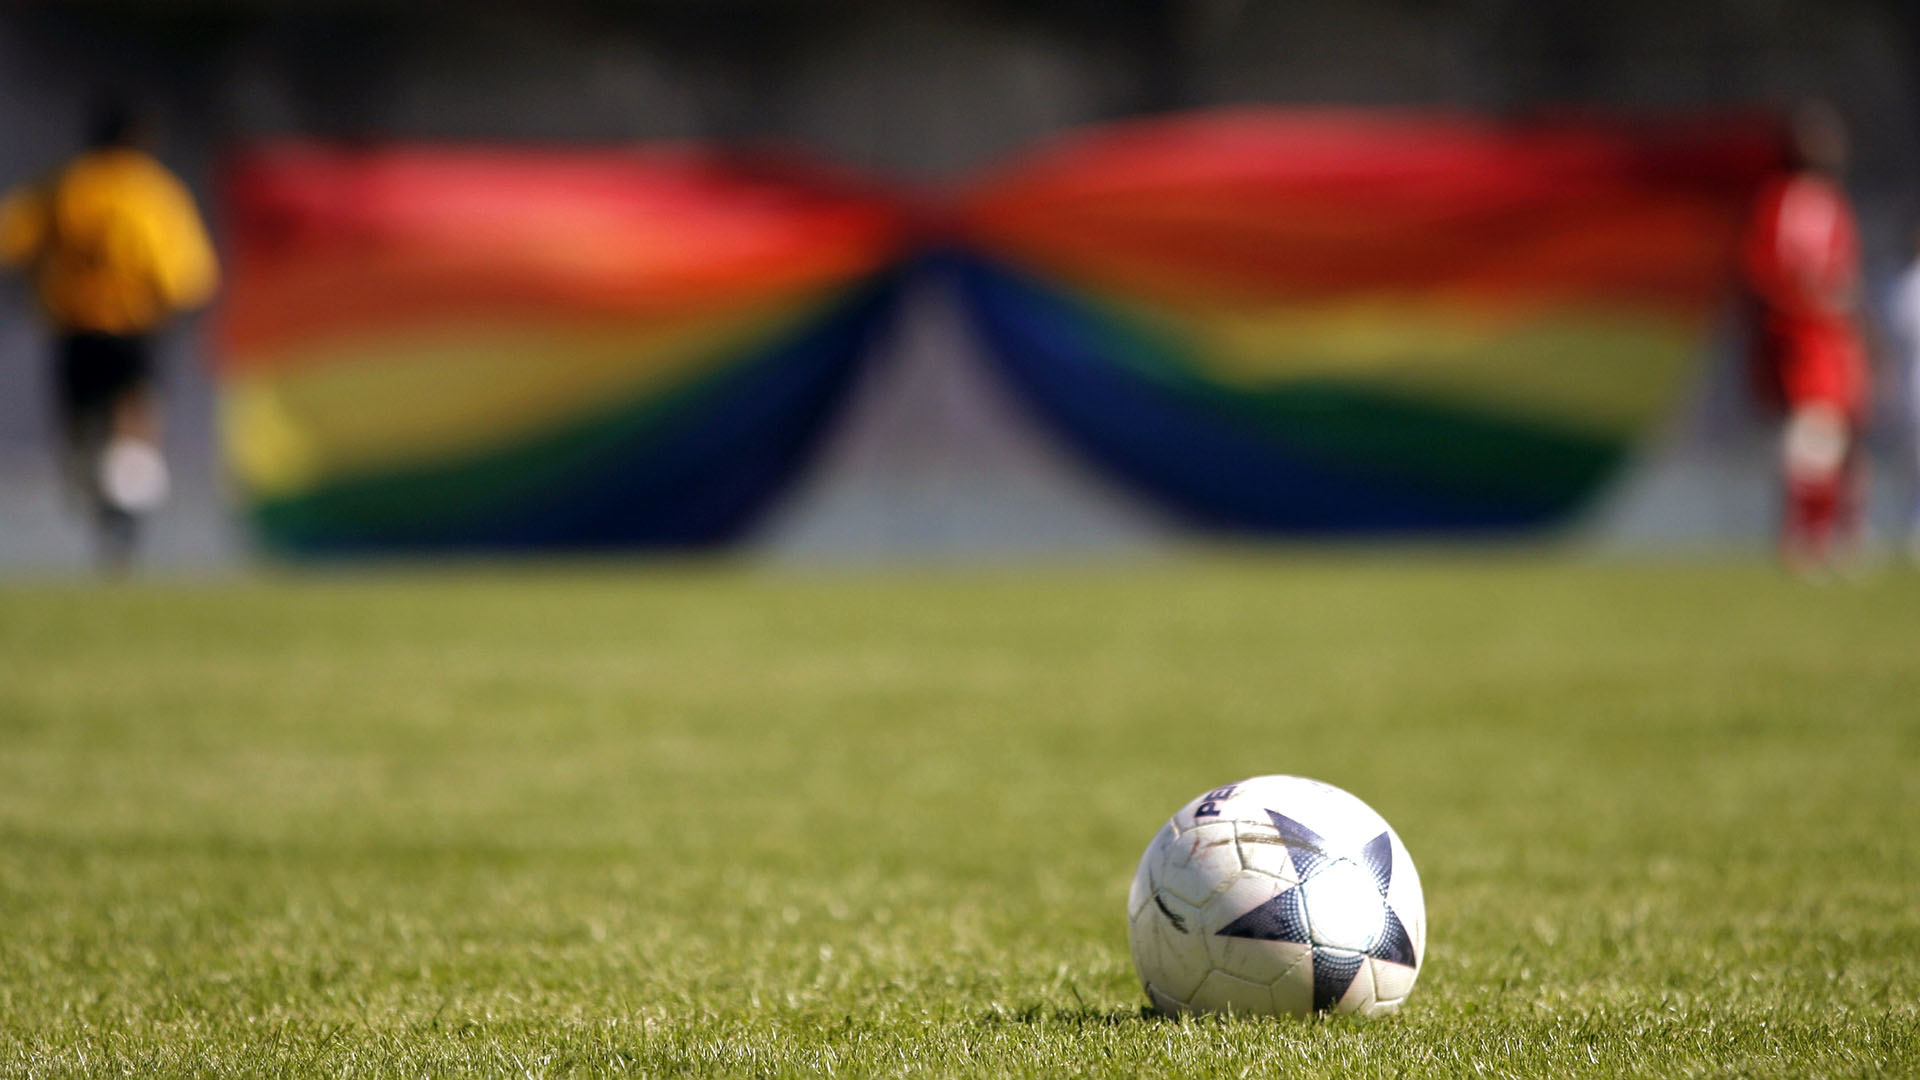 La FIFA ya tenía conocimiento sobre el lugar donde se festejaría el evento más grande del soccer, sabiendo que sería una apuesta arriesgada para todos aquellos que irían, en especial los aficionados homosexuales. (Foto: AFP)